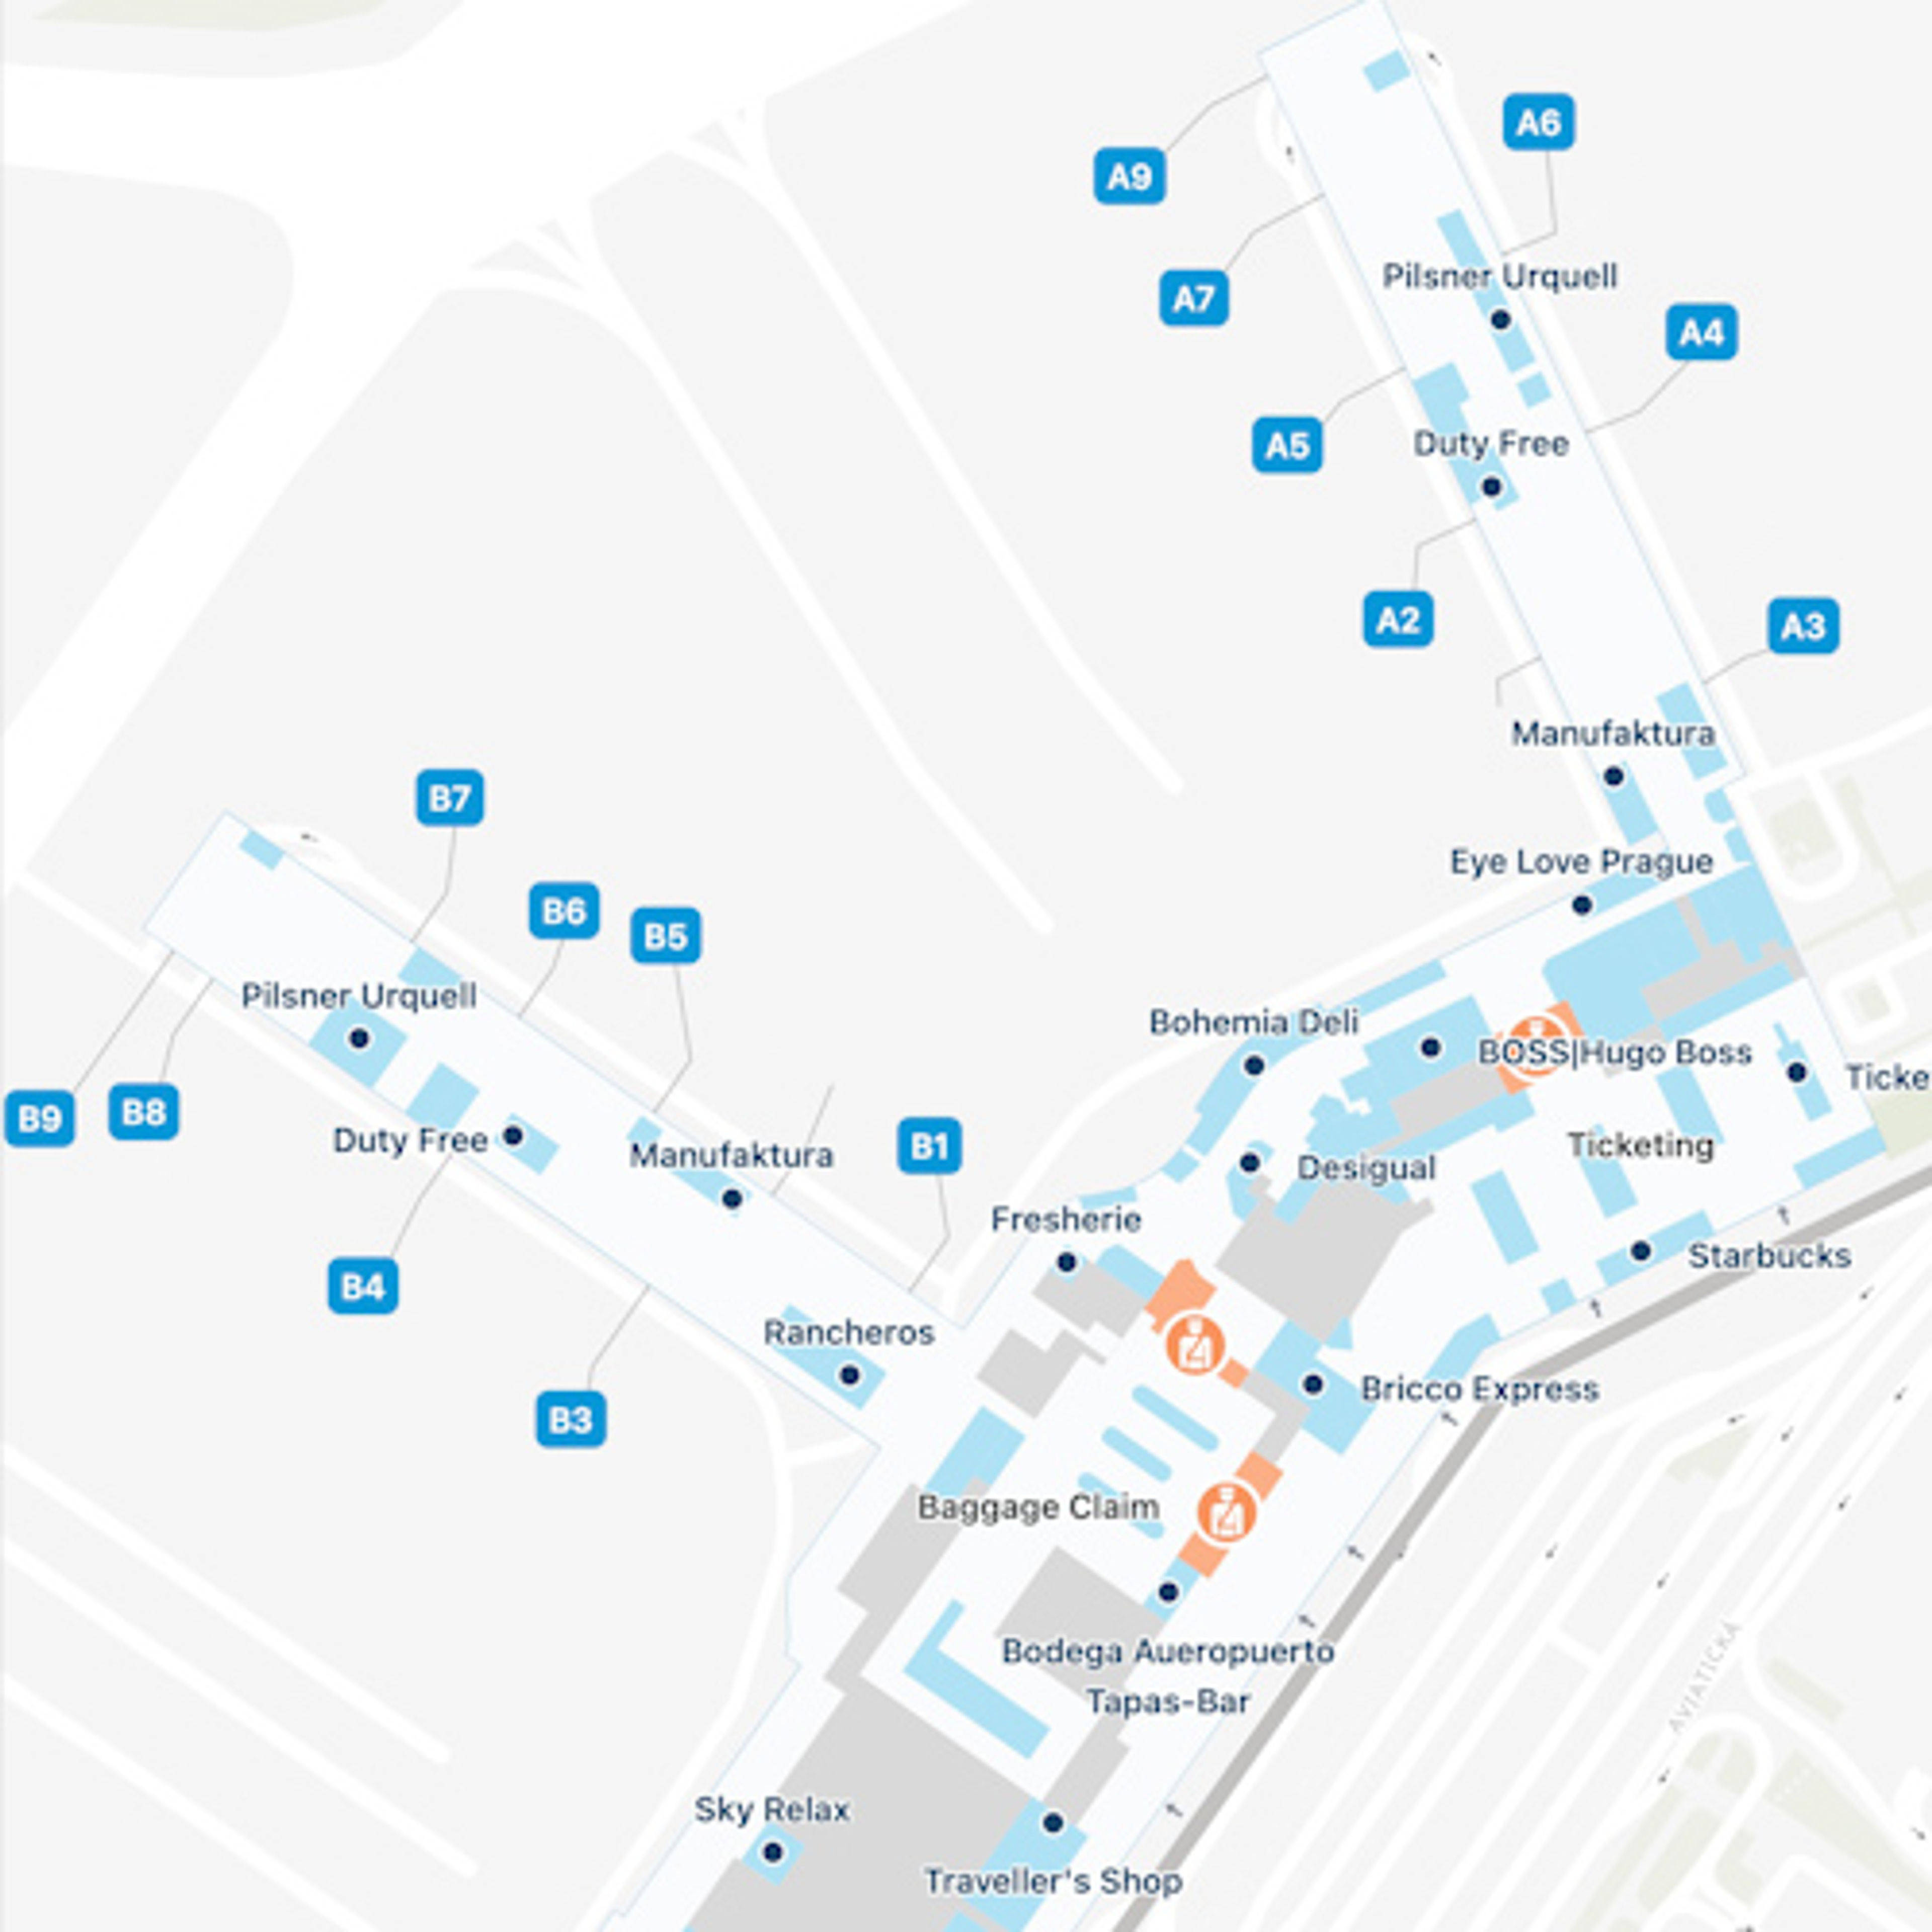 Praha 6 Airport Terminal 1 Map